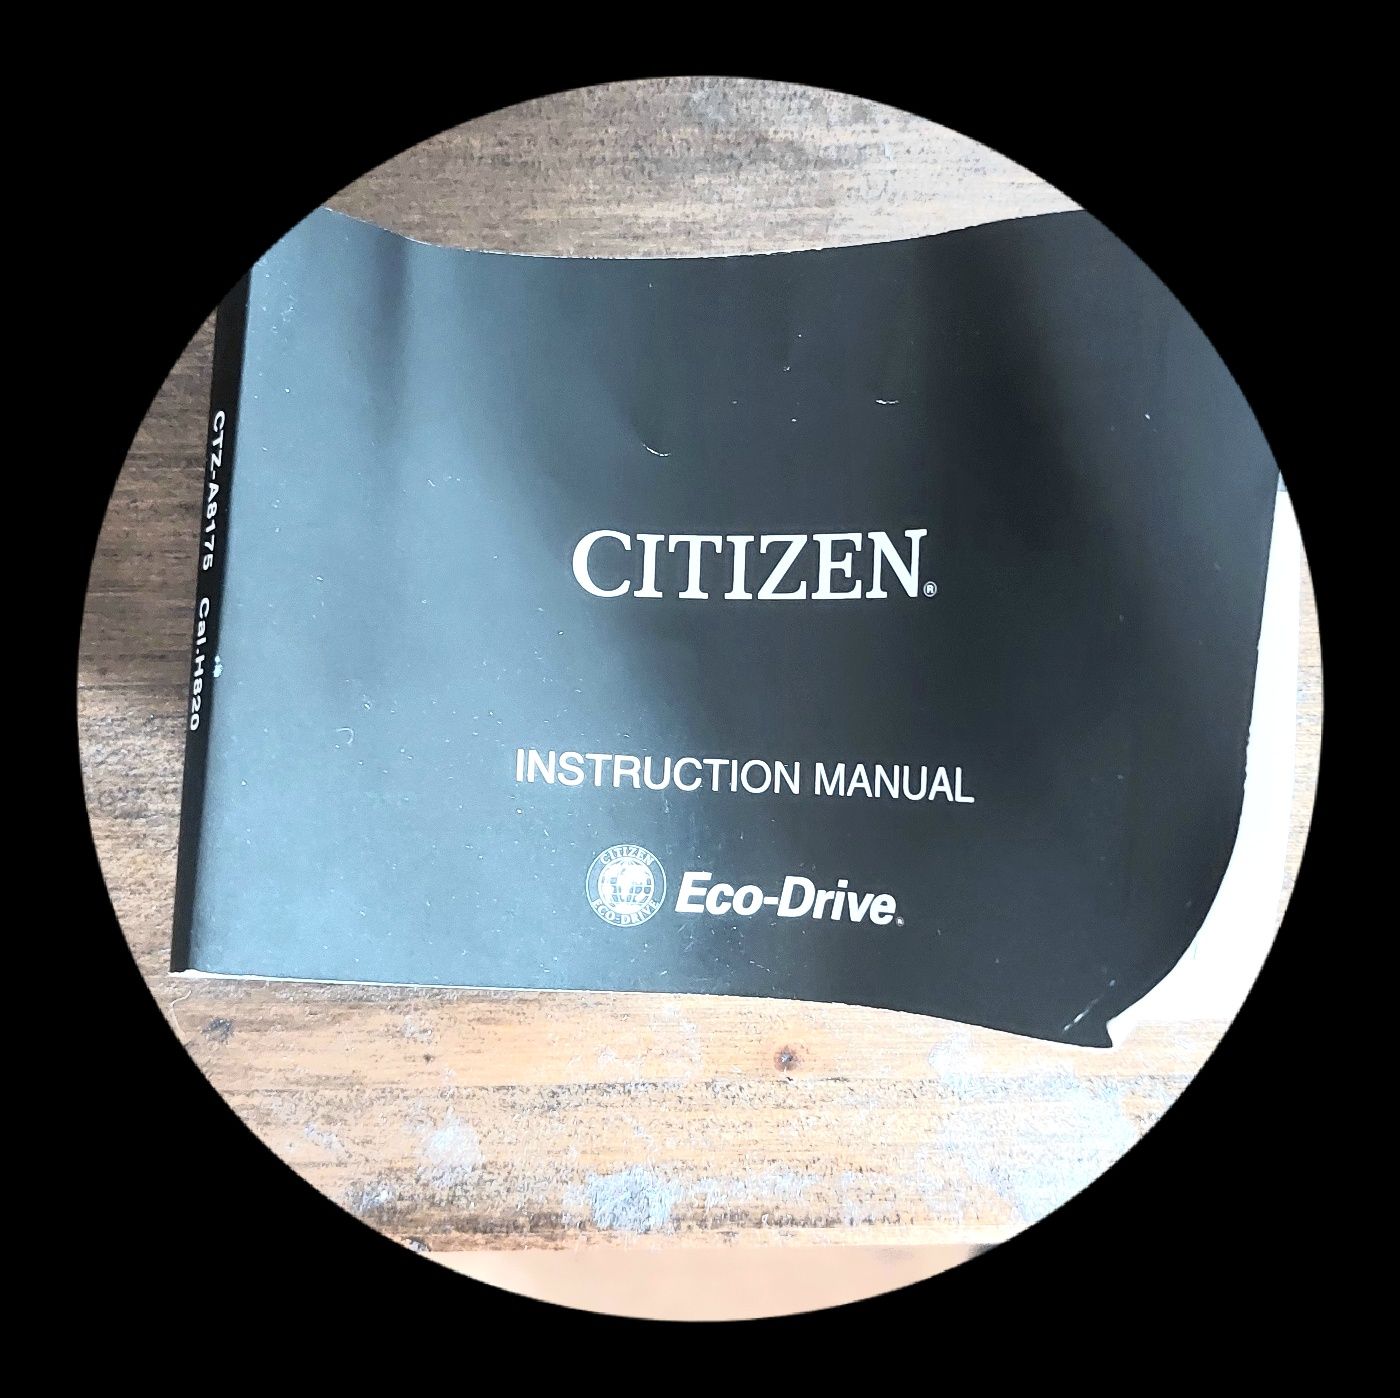 Citizen Eco Drive